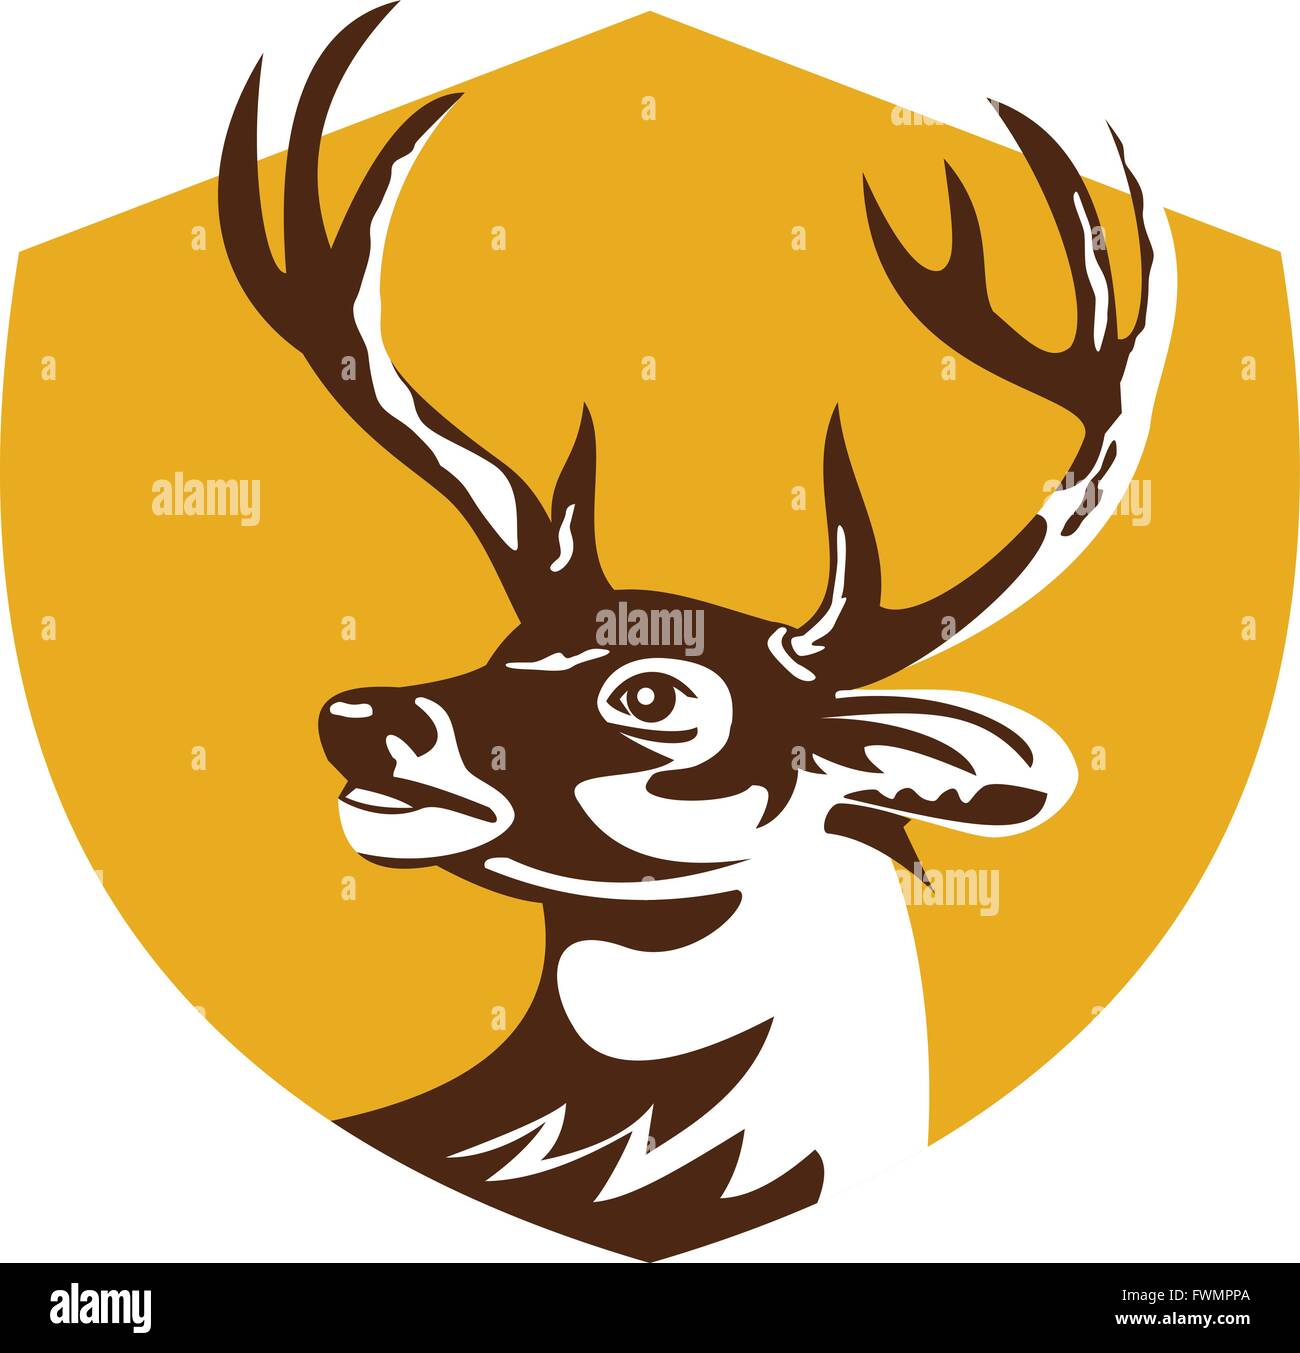 Illustration d'une tête de cerf cerf buck à côté de l'écran à l'intérieur set crest fait en style rétro. Illustration de Vecteur